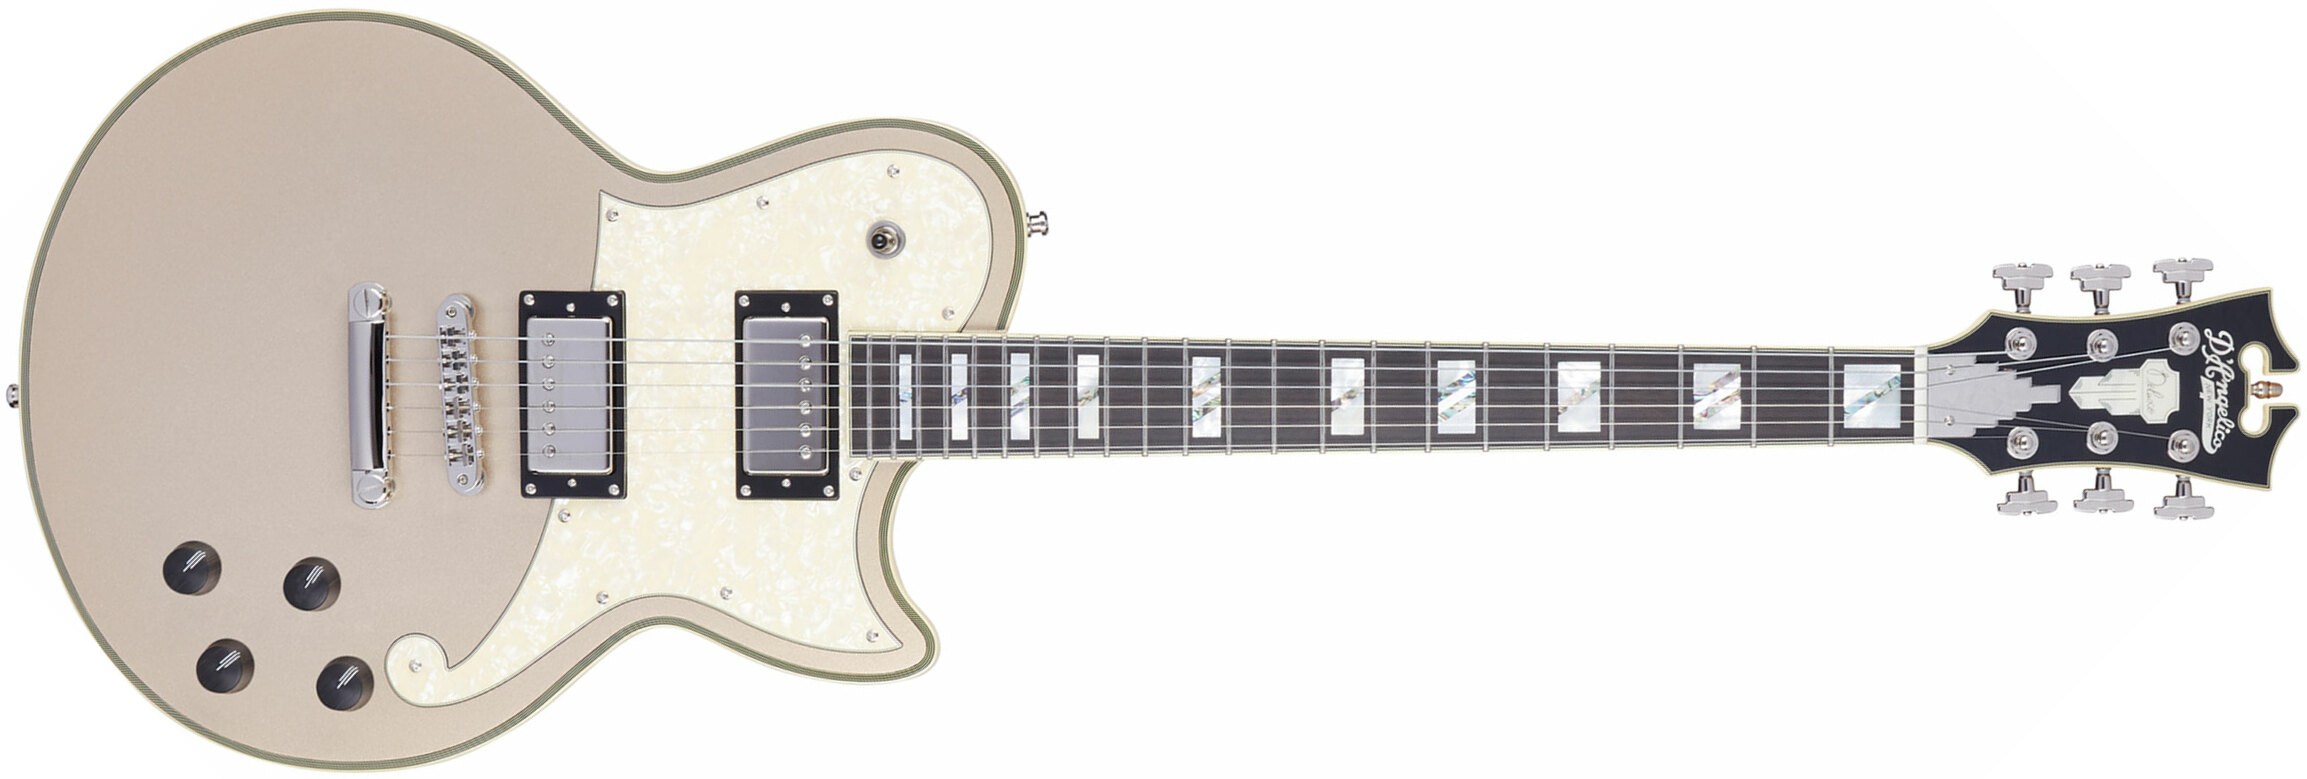 D'angelico Deluxe Atlantic 2h Ht Eb - Desert Gold - Enkel gesneden elektrische gitaar - Main picture